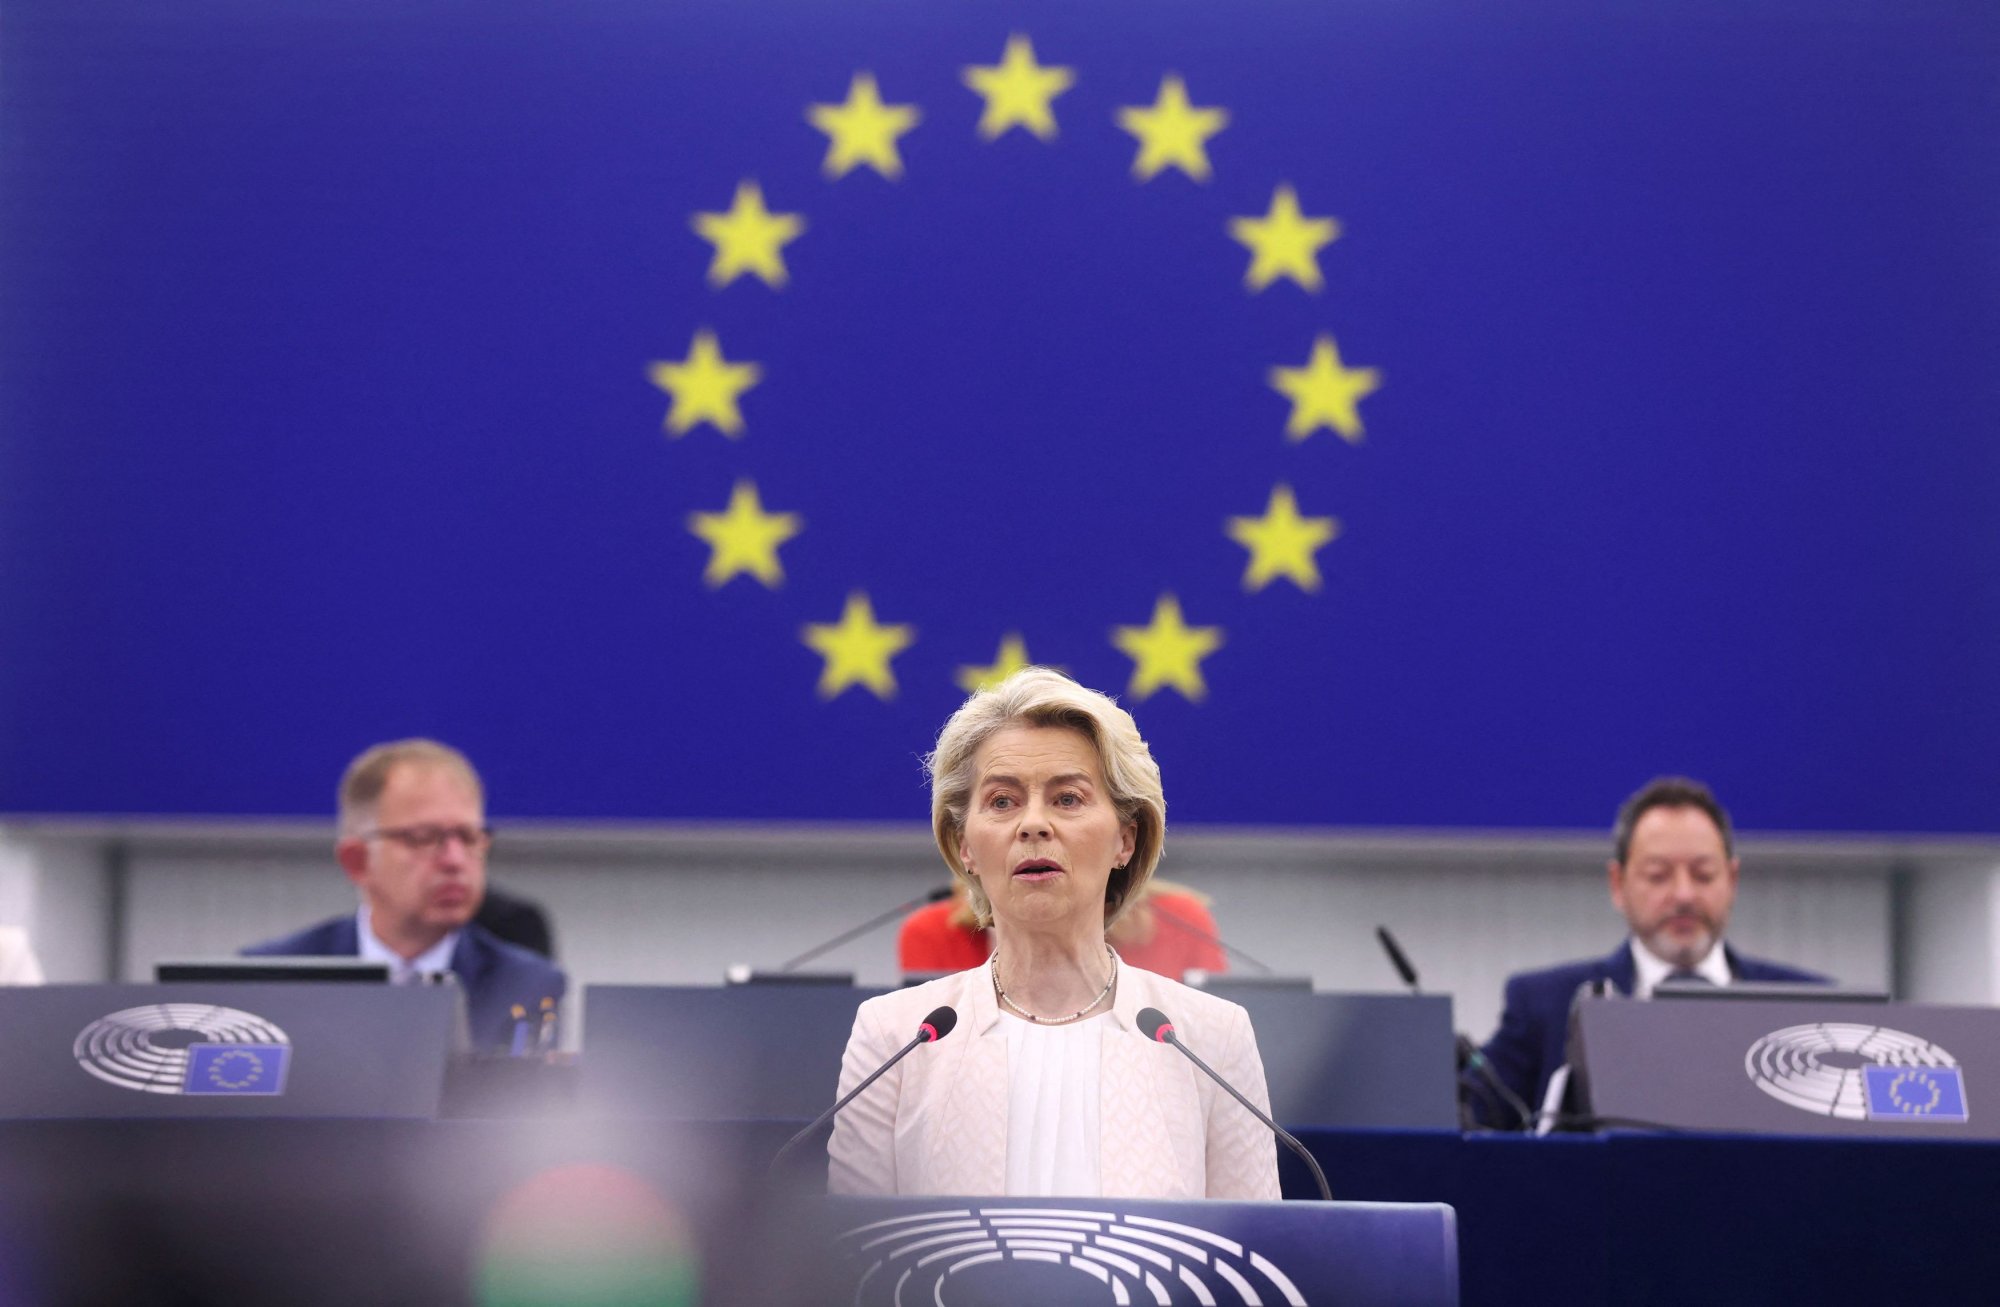 Ούρσουλα φον ντερ Λάιεν: Σε εξέλιξη η ψηφοφορία στο Ευρωπαϊκό Κοινοβούλιο - Θα εκλεγεί ξανά πρόεδρος της ΕΕ;